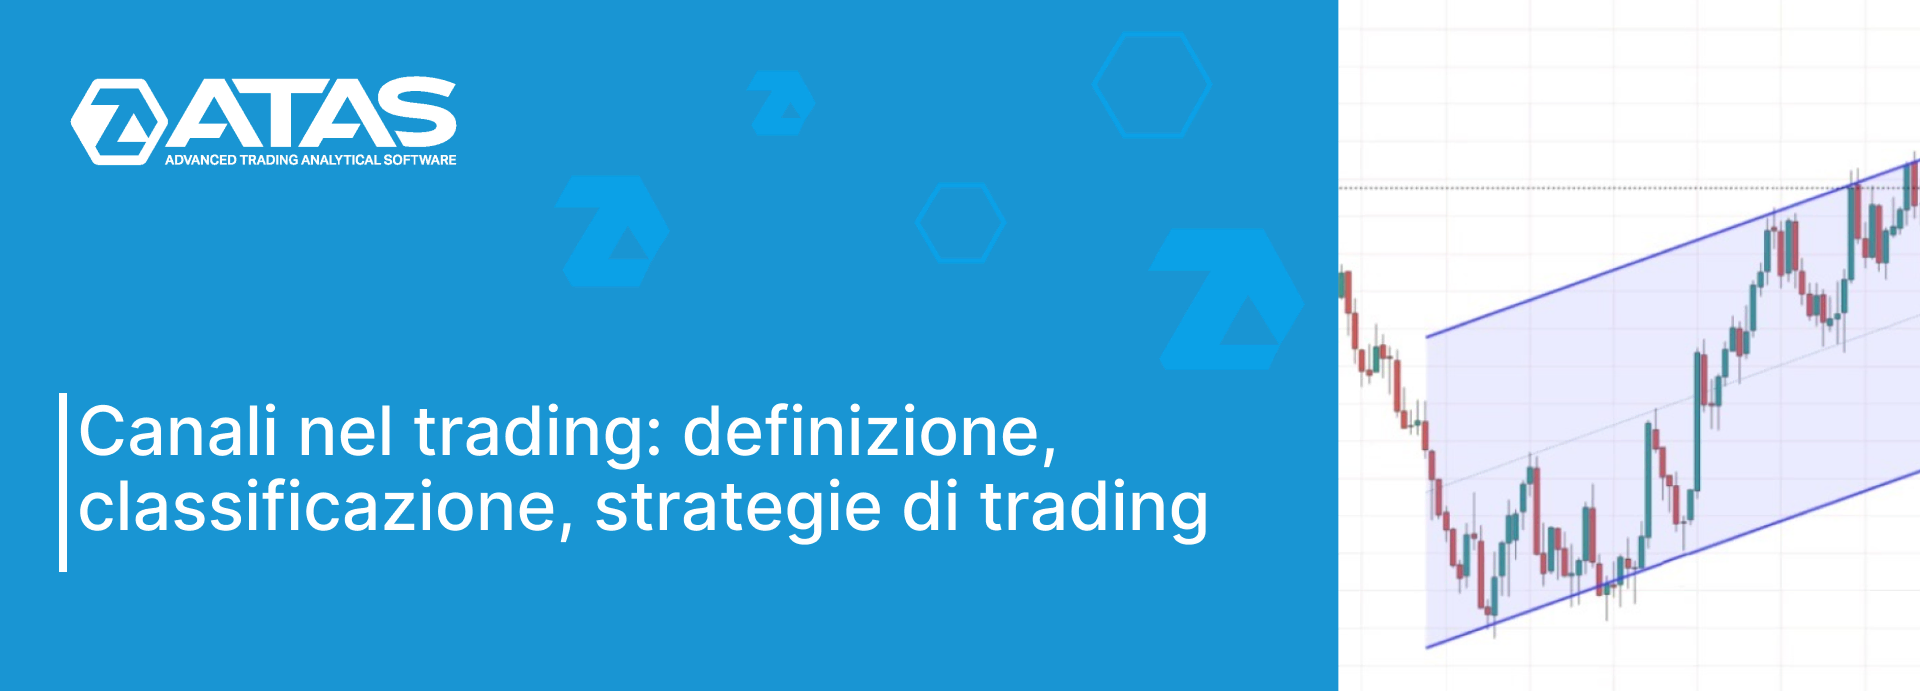 Canali nel trading definizione, classificazione, strategie di trading